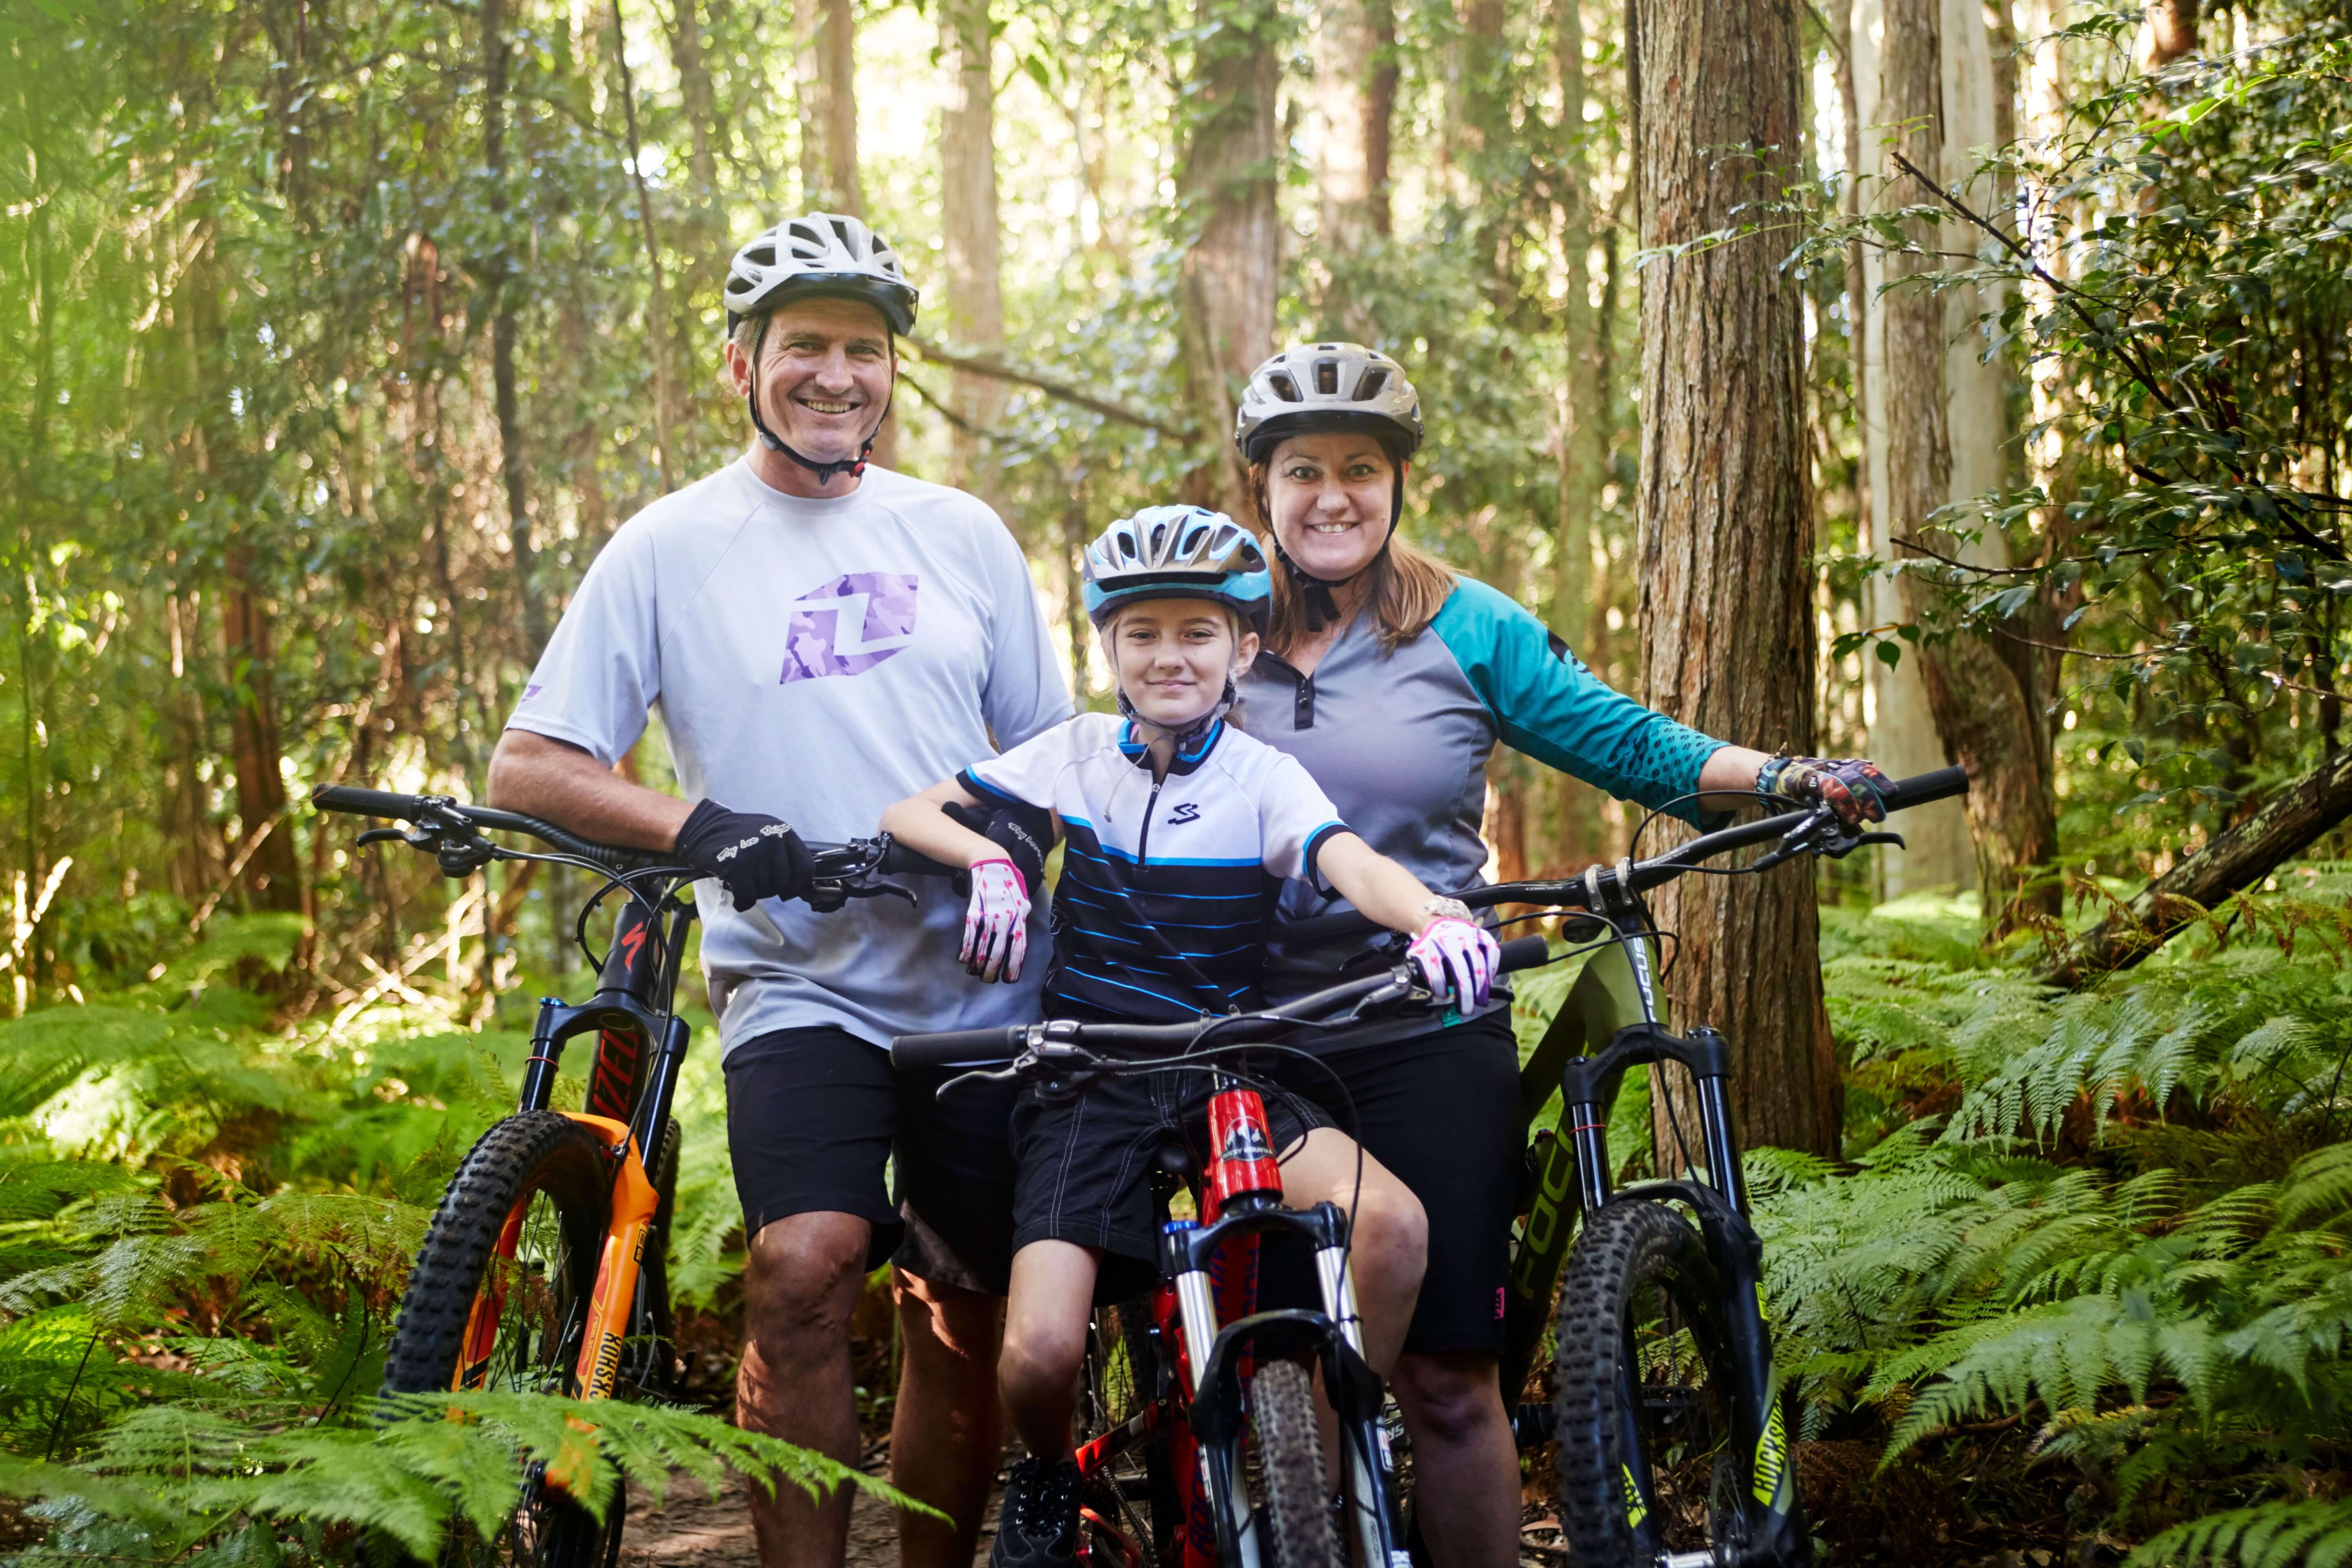 family on mountain bikes smiling happily